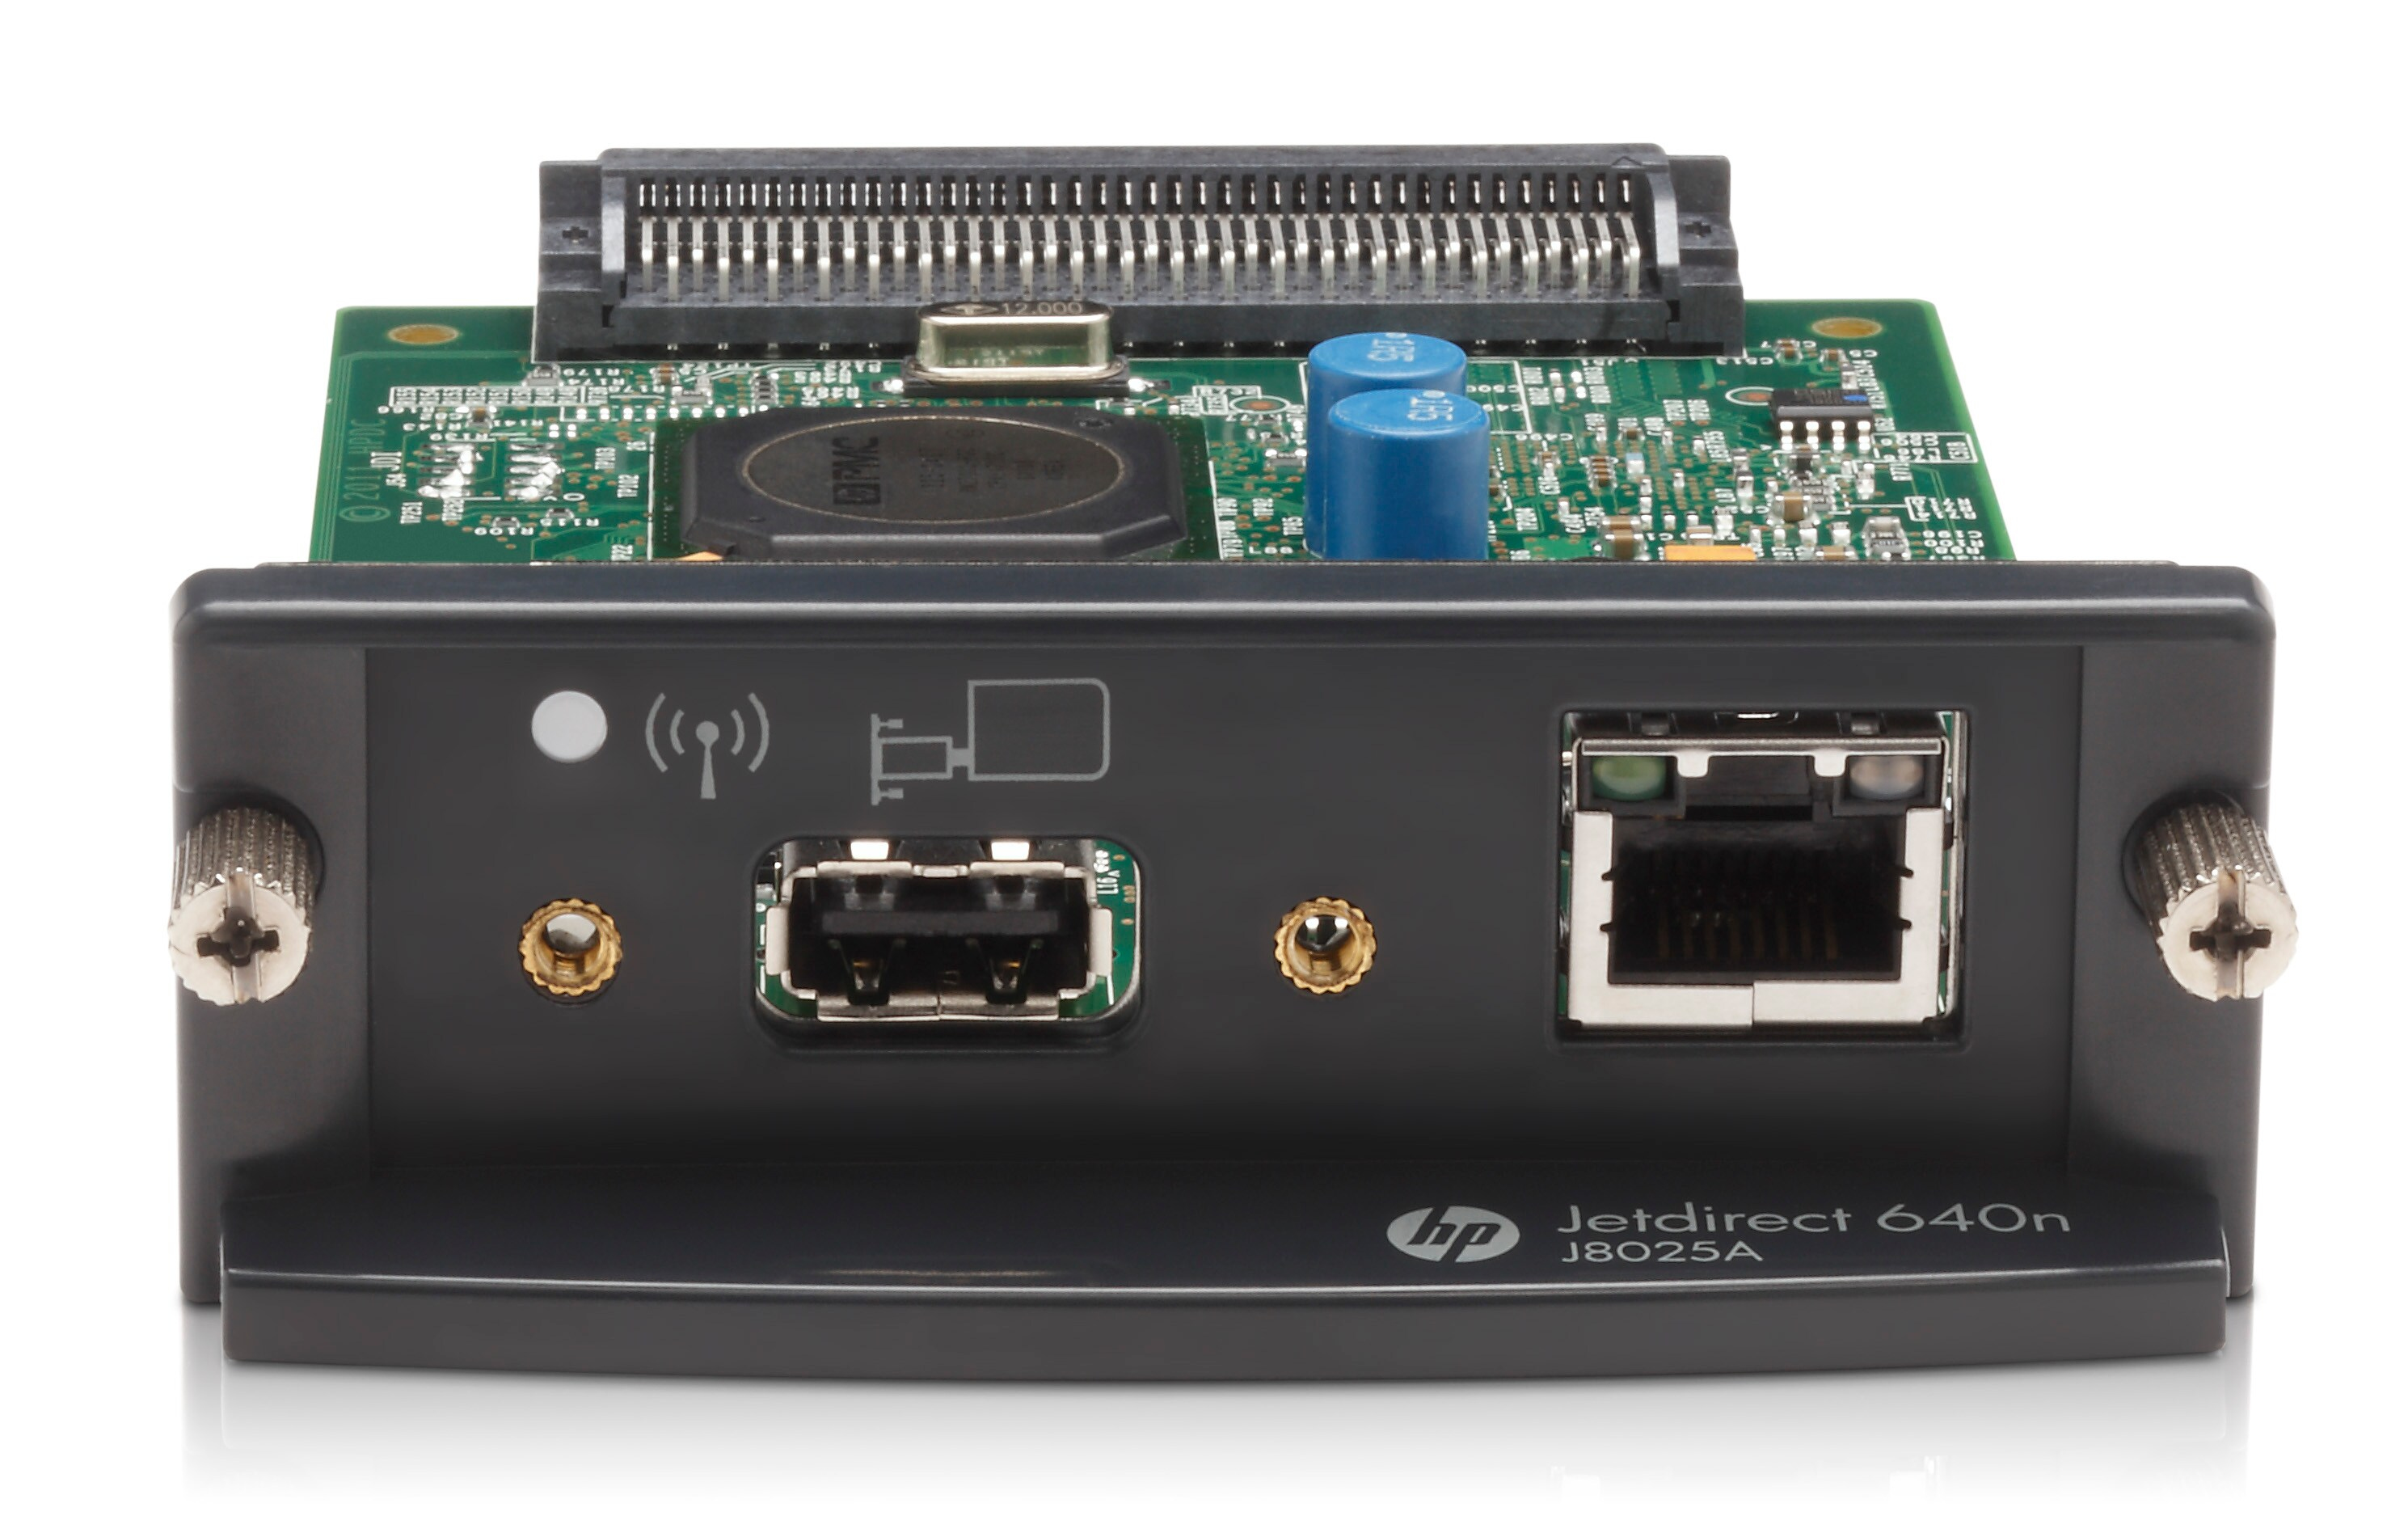 HP JetDirect 640n - Druckserver - EIO - Gigabit Ethernet